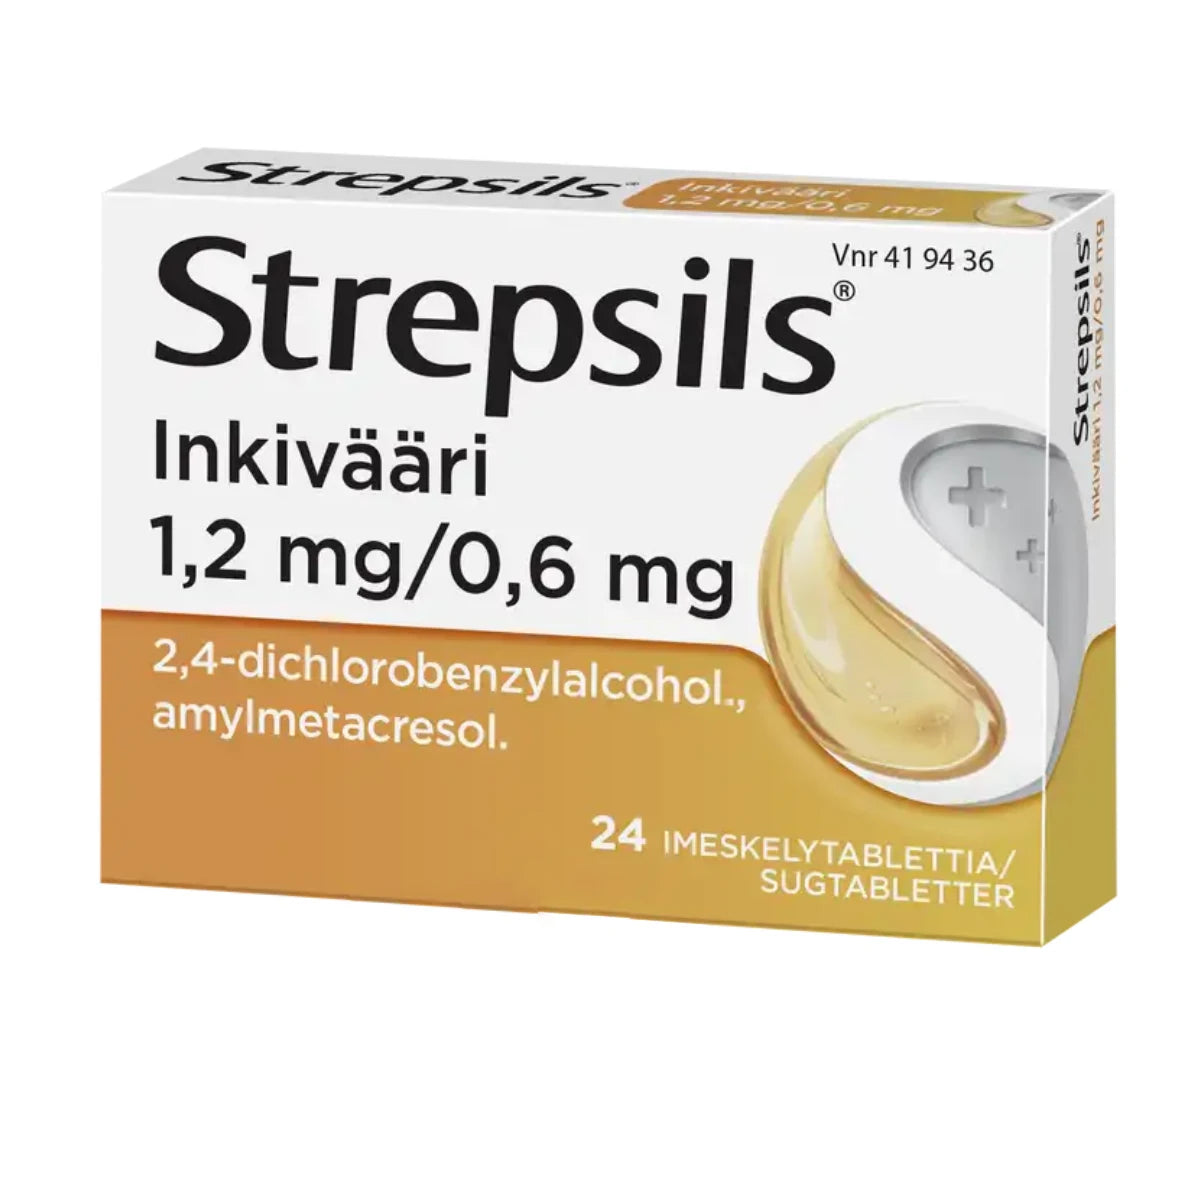 STREPSILS Inkivääri 0,6 mg/1,2 mg imeskelytabletti 24 kpl